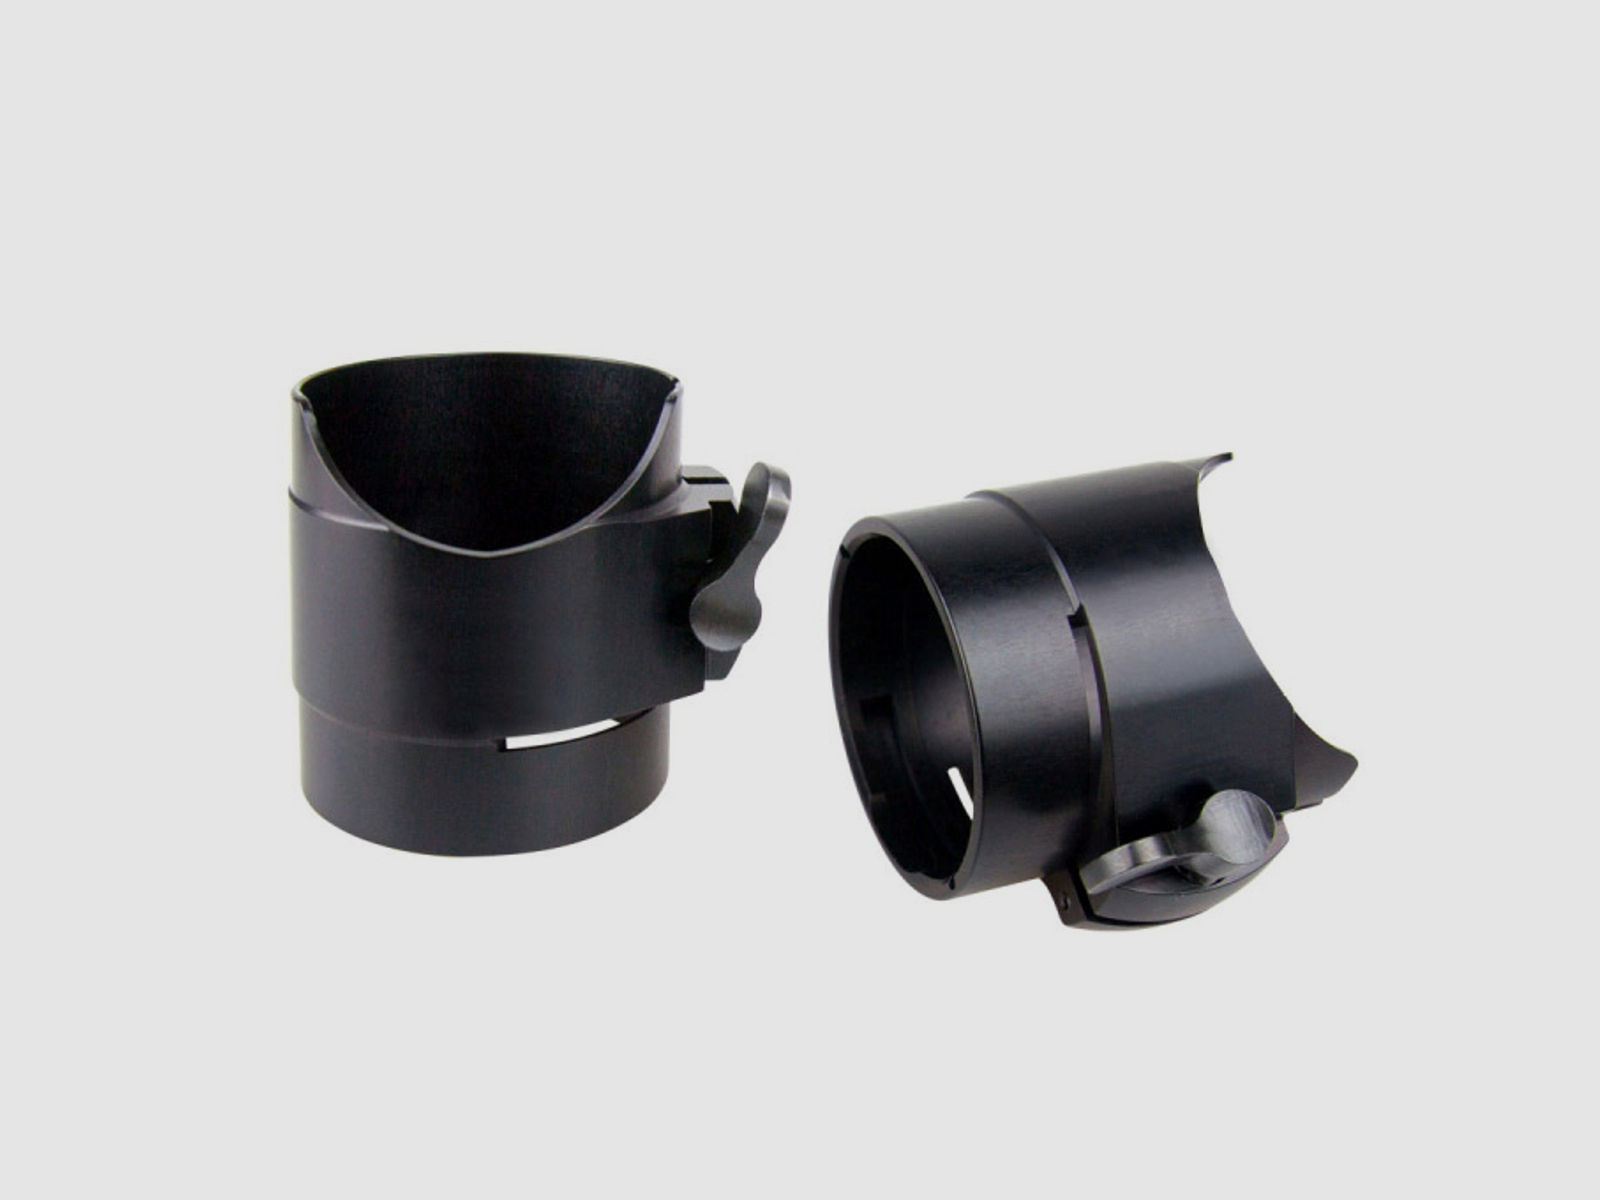 PARD Okularadapter mit Schnellverschlussschraube  für NV007-/ A / V passend für Leica Magnus